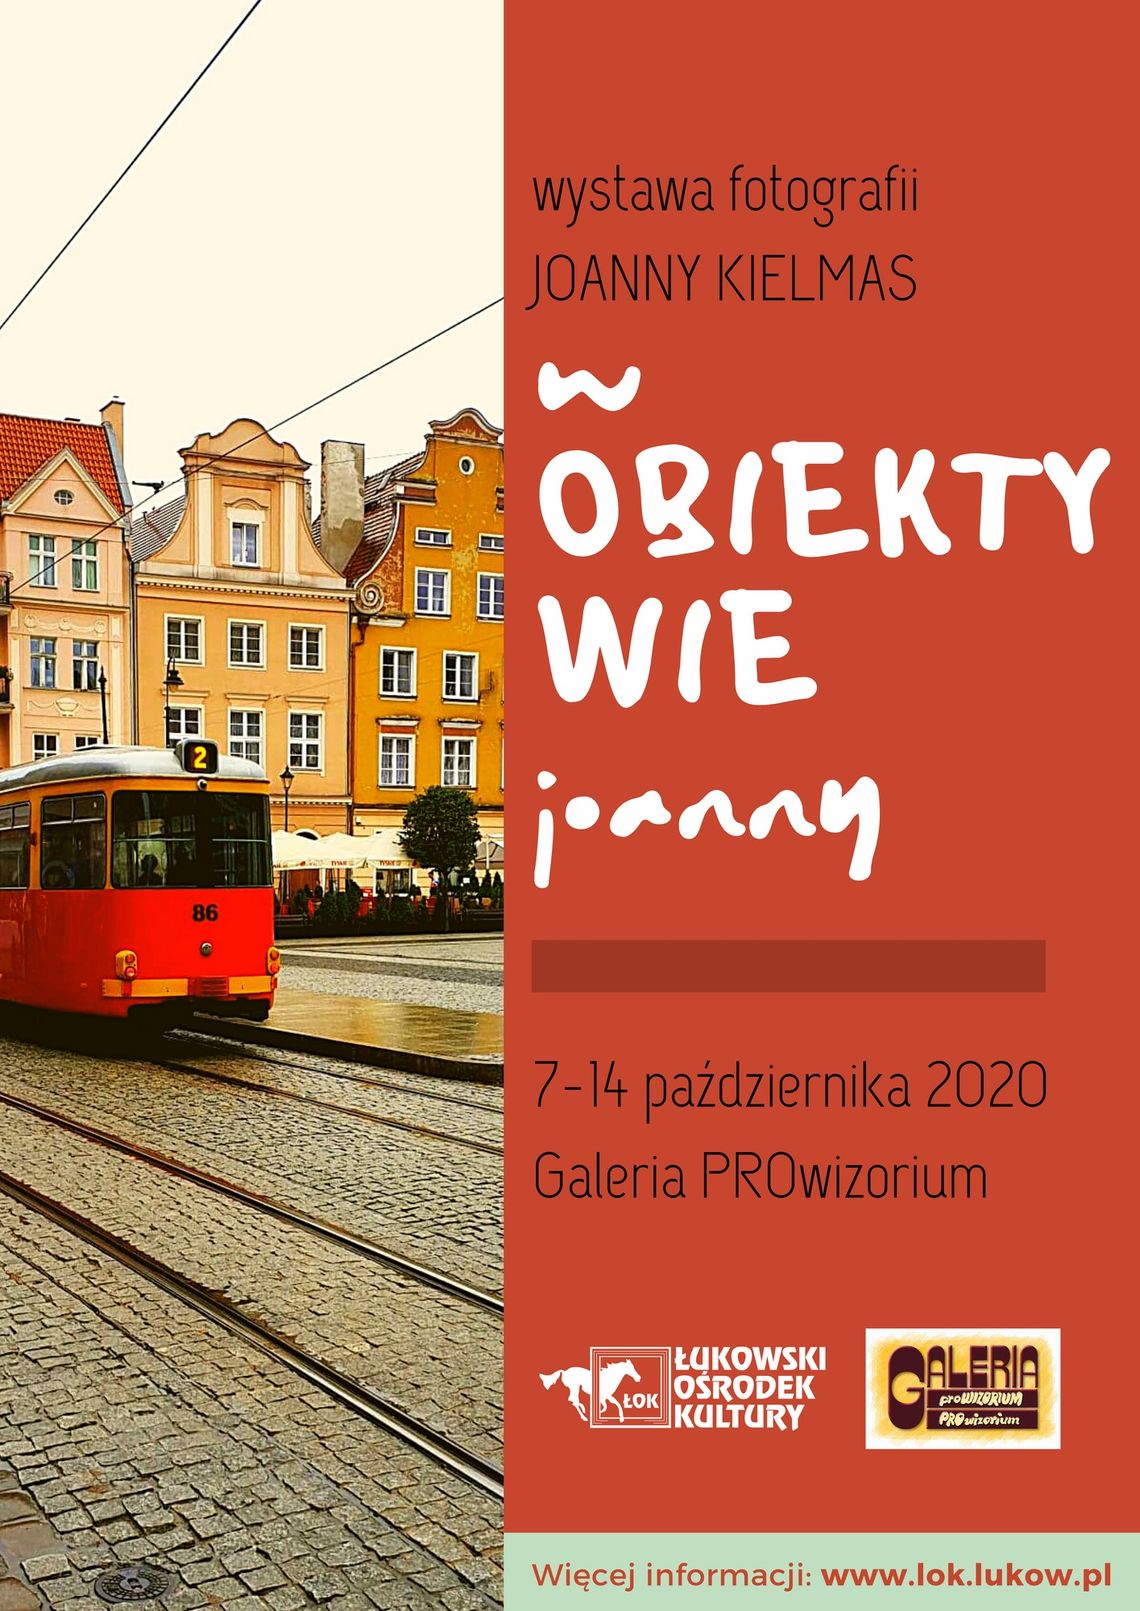 Wystawa fotografii Joanny Kielmas ,,W obiektywie Joanny” /7-14 października 2020